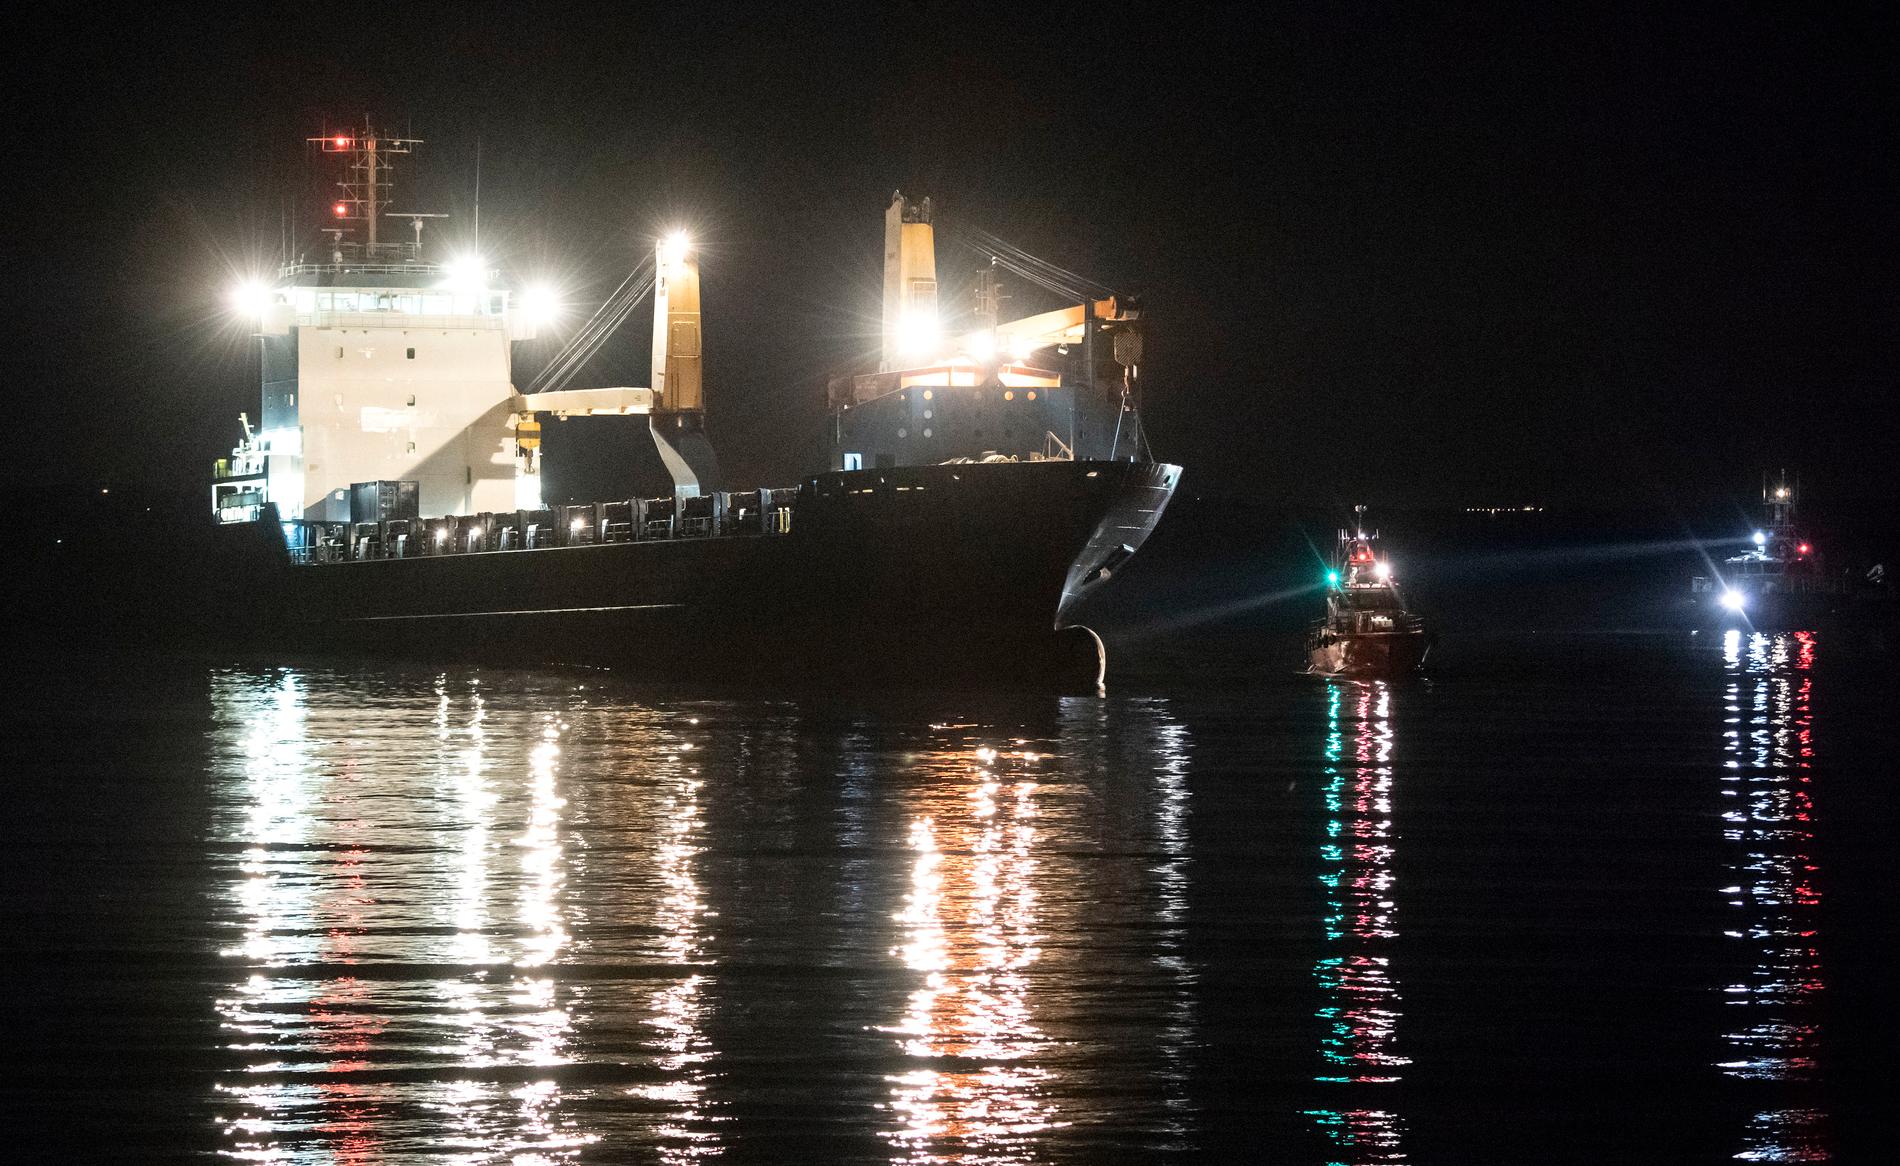 En lotsbåt och ett fartyg från Kustbevakningen på plats vid det 130 meter långa fartyget BBC Lagos, som gick på grund på kvällen 3 augusti zutanför Råå vallar. Fartyget hade gått i nordlig riktning på väg mot Klaipeda när det gick på.